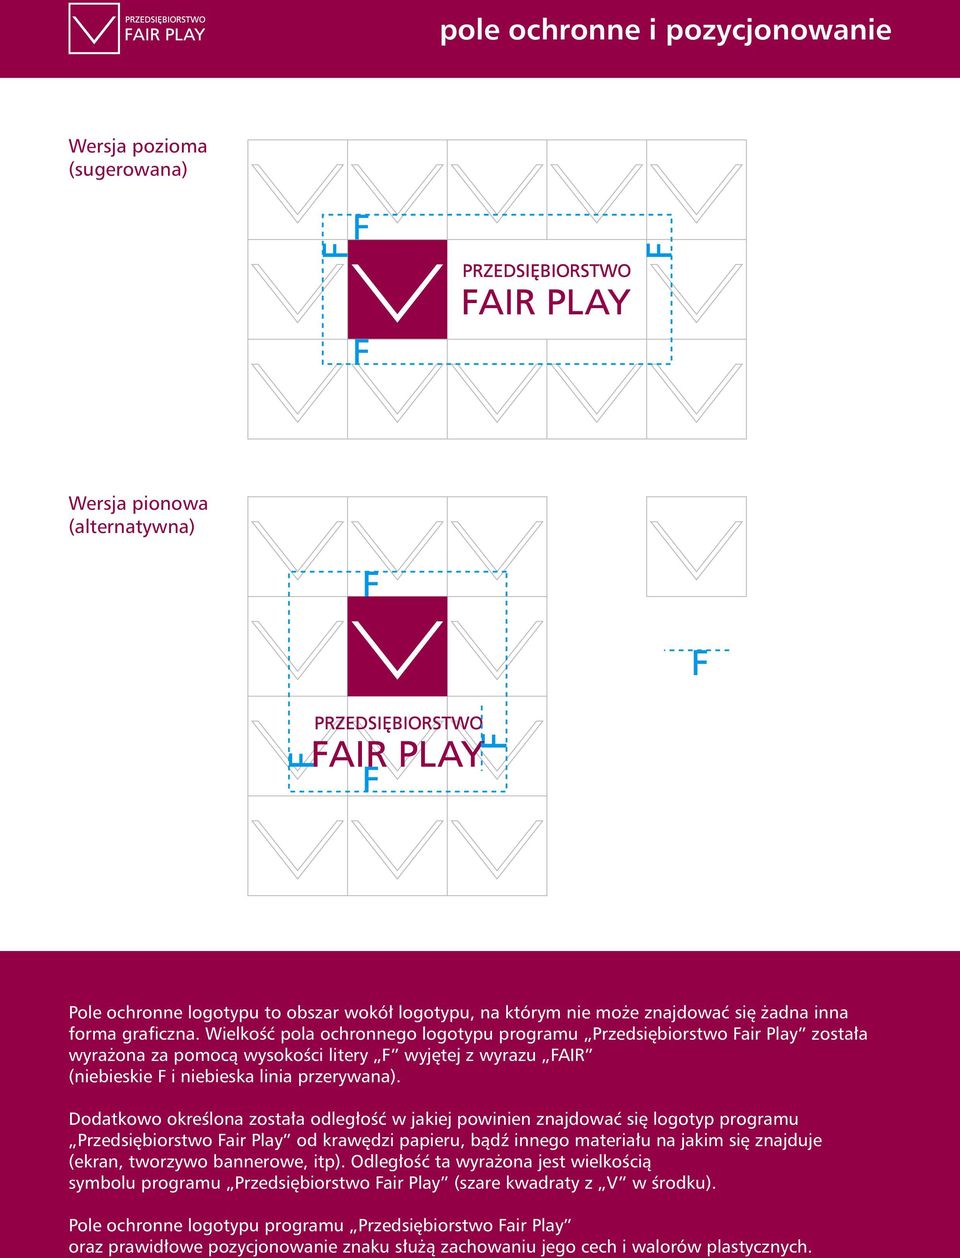 Dodatkowo określona została odległość w jakiej powinien znajdować się logotyp programu Przedsiębiorstwo Fair Play od krawędzi papieru, bądź innego materiału na jakim się znajduje (ekran, tworzywo